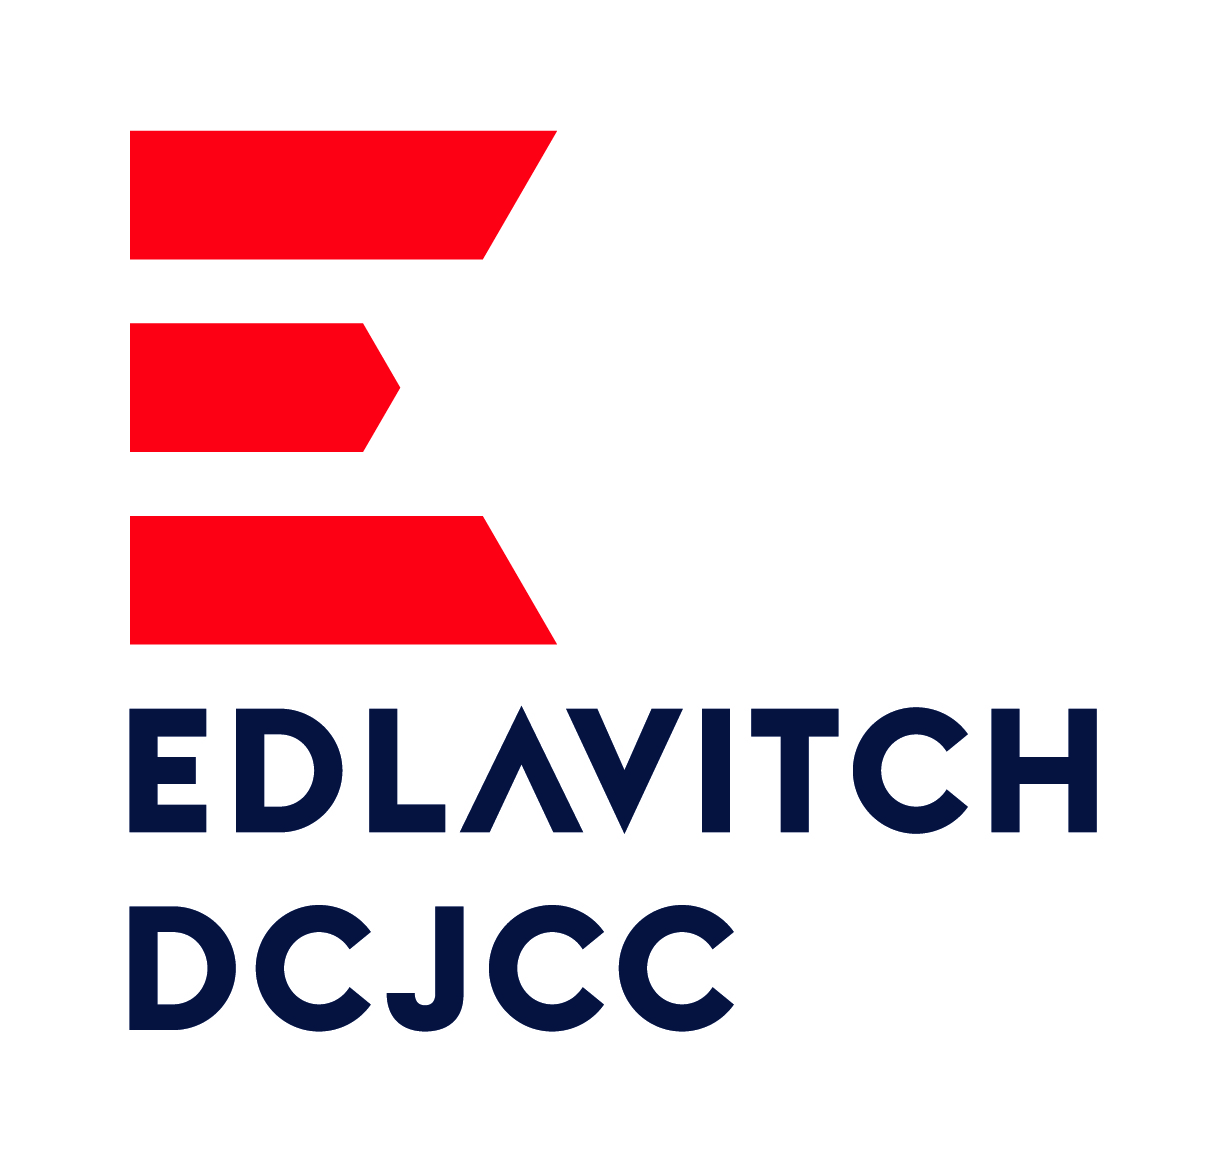 Edlavitch DCJCC